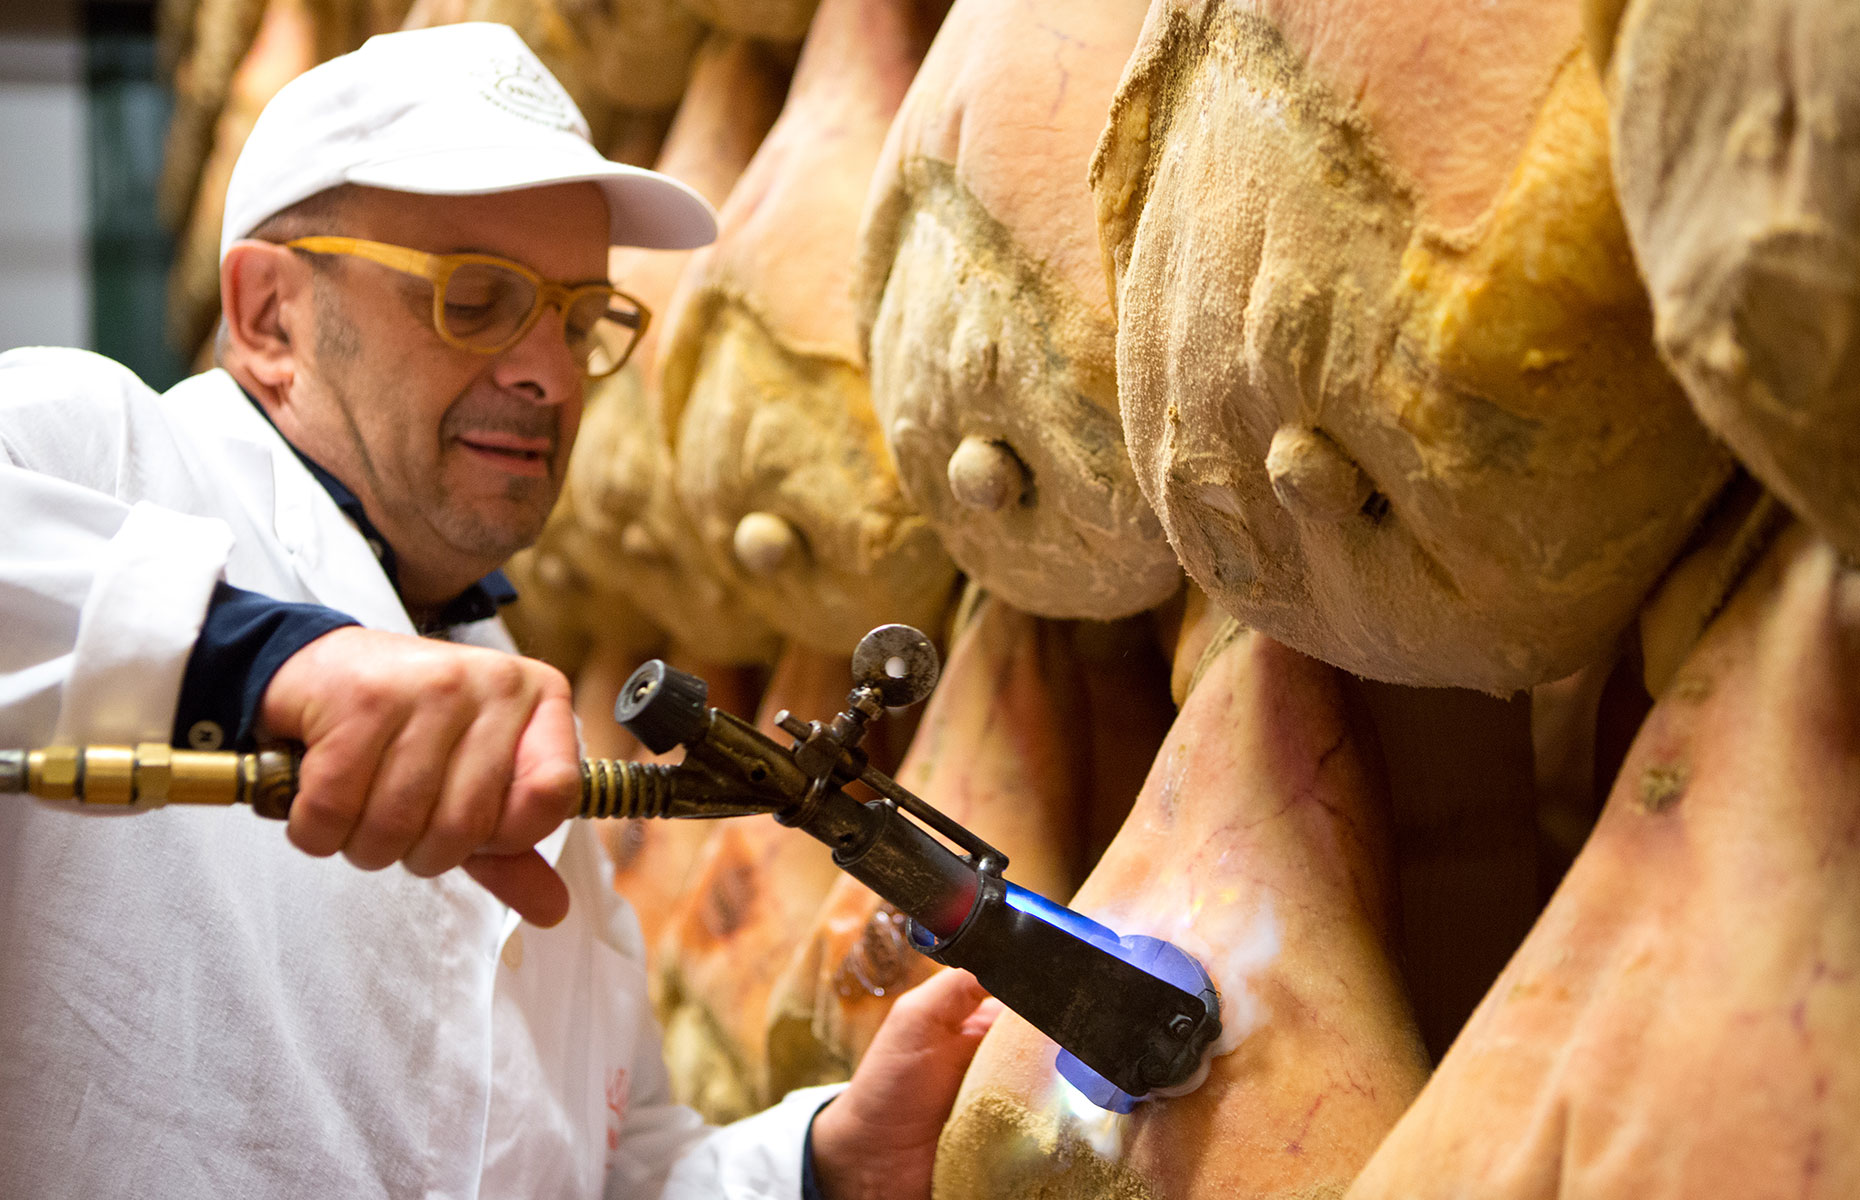 Branding a Parma Ham leg (Image courtesy of Consorzio del Prosciutto di Parma)